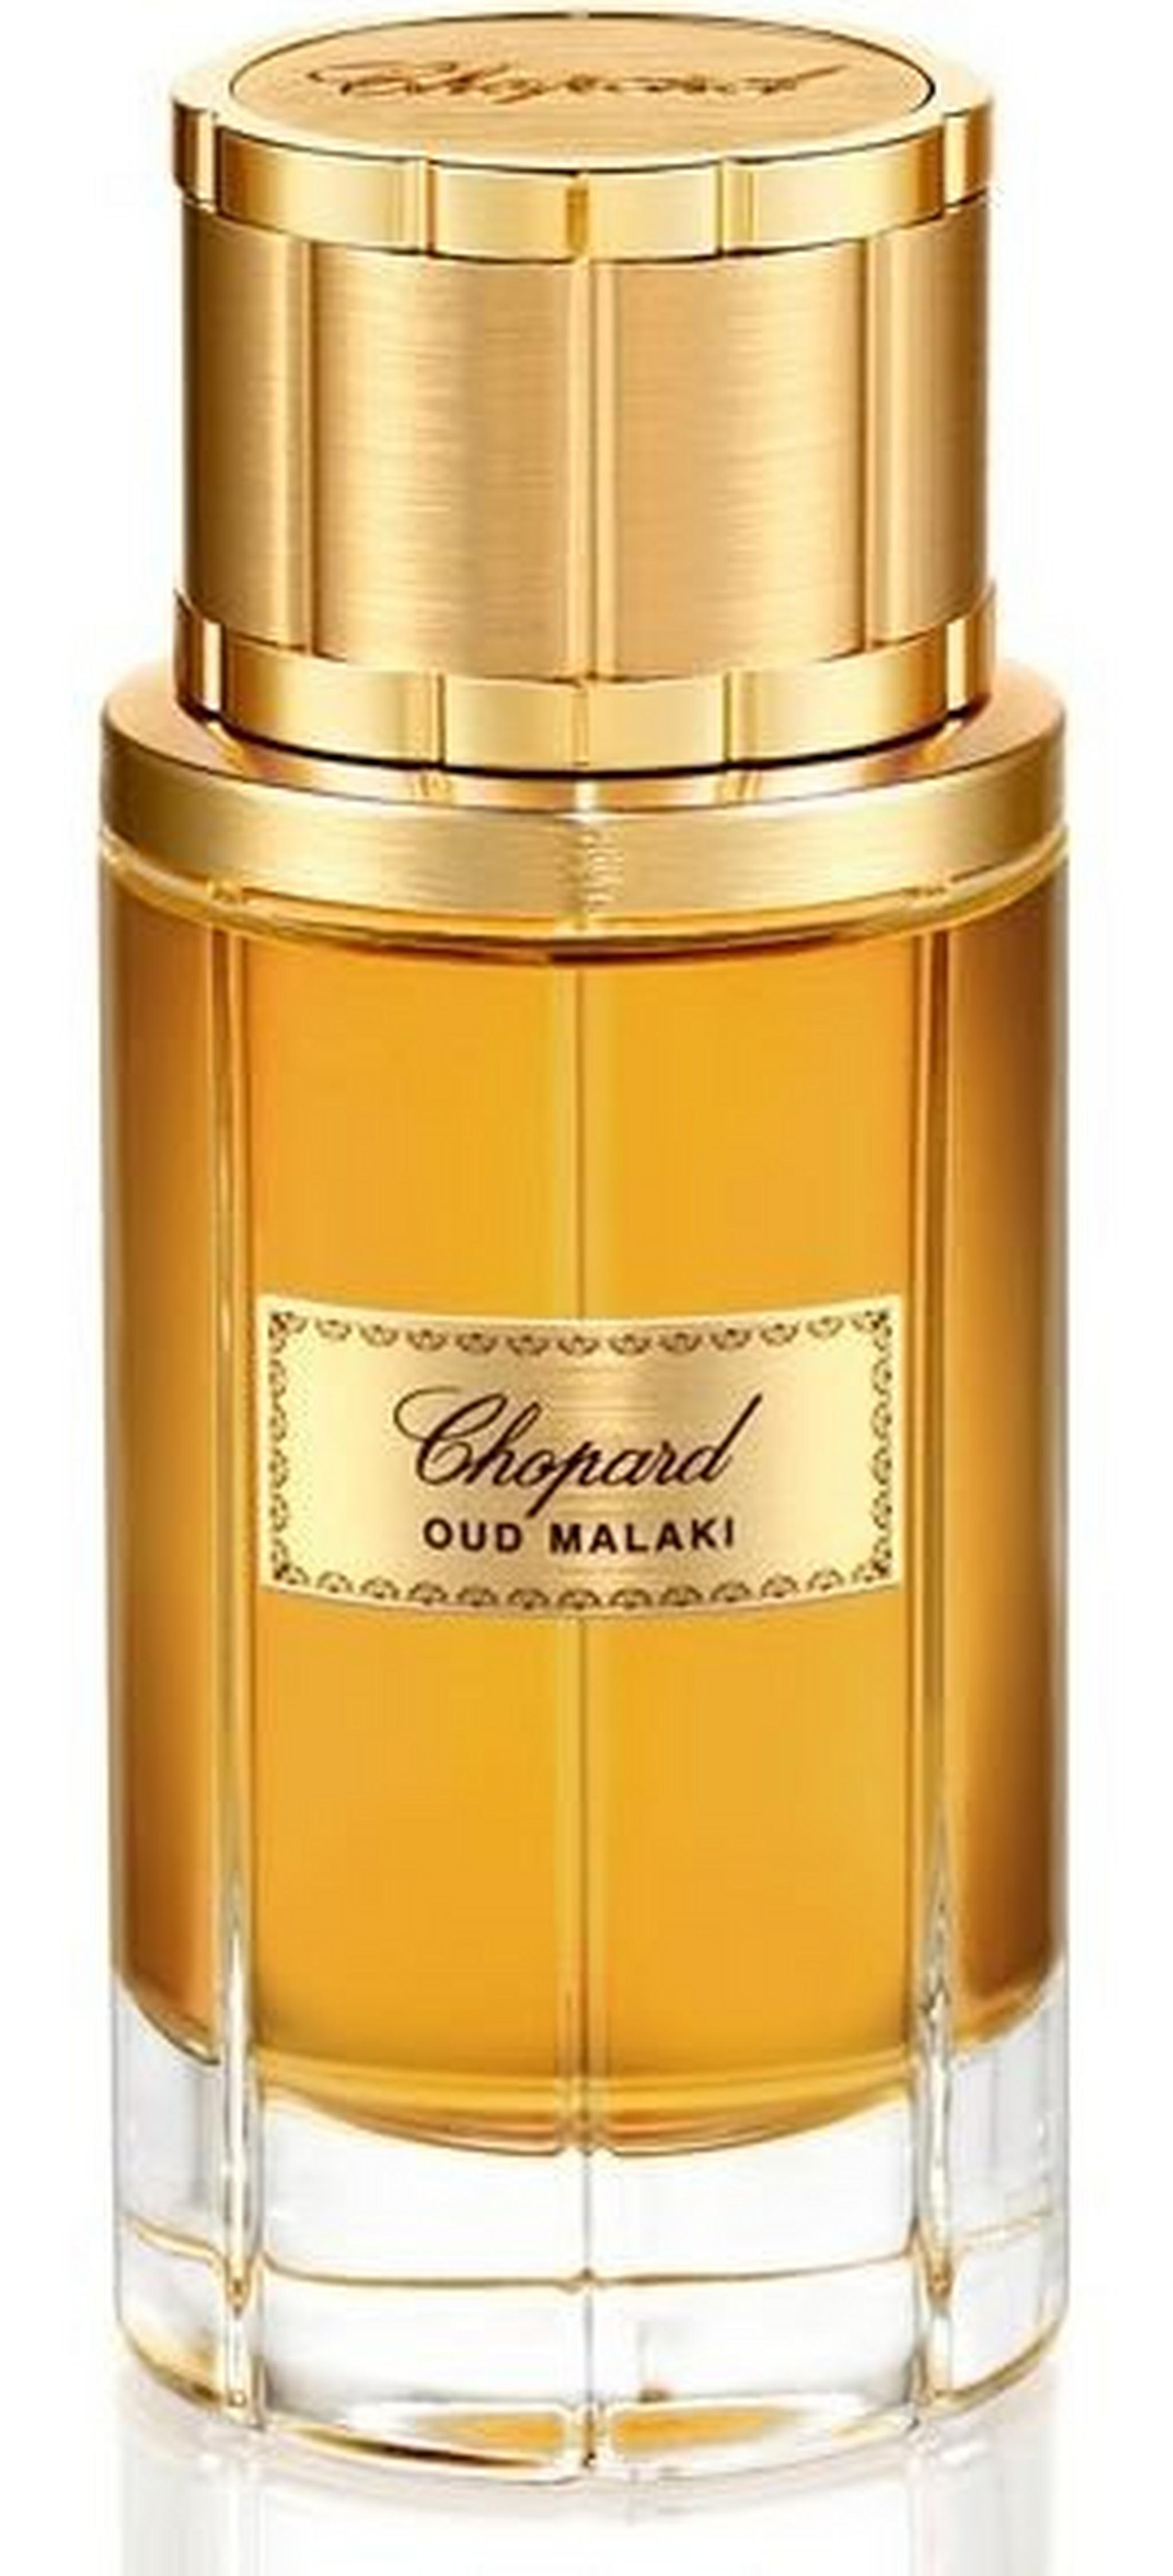 Chopard Oud Malaki EDP for Men 80ml Perfume